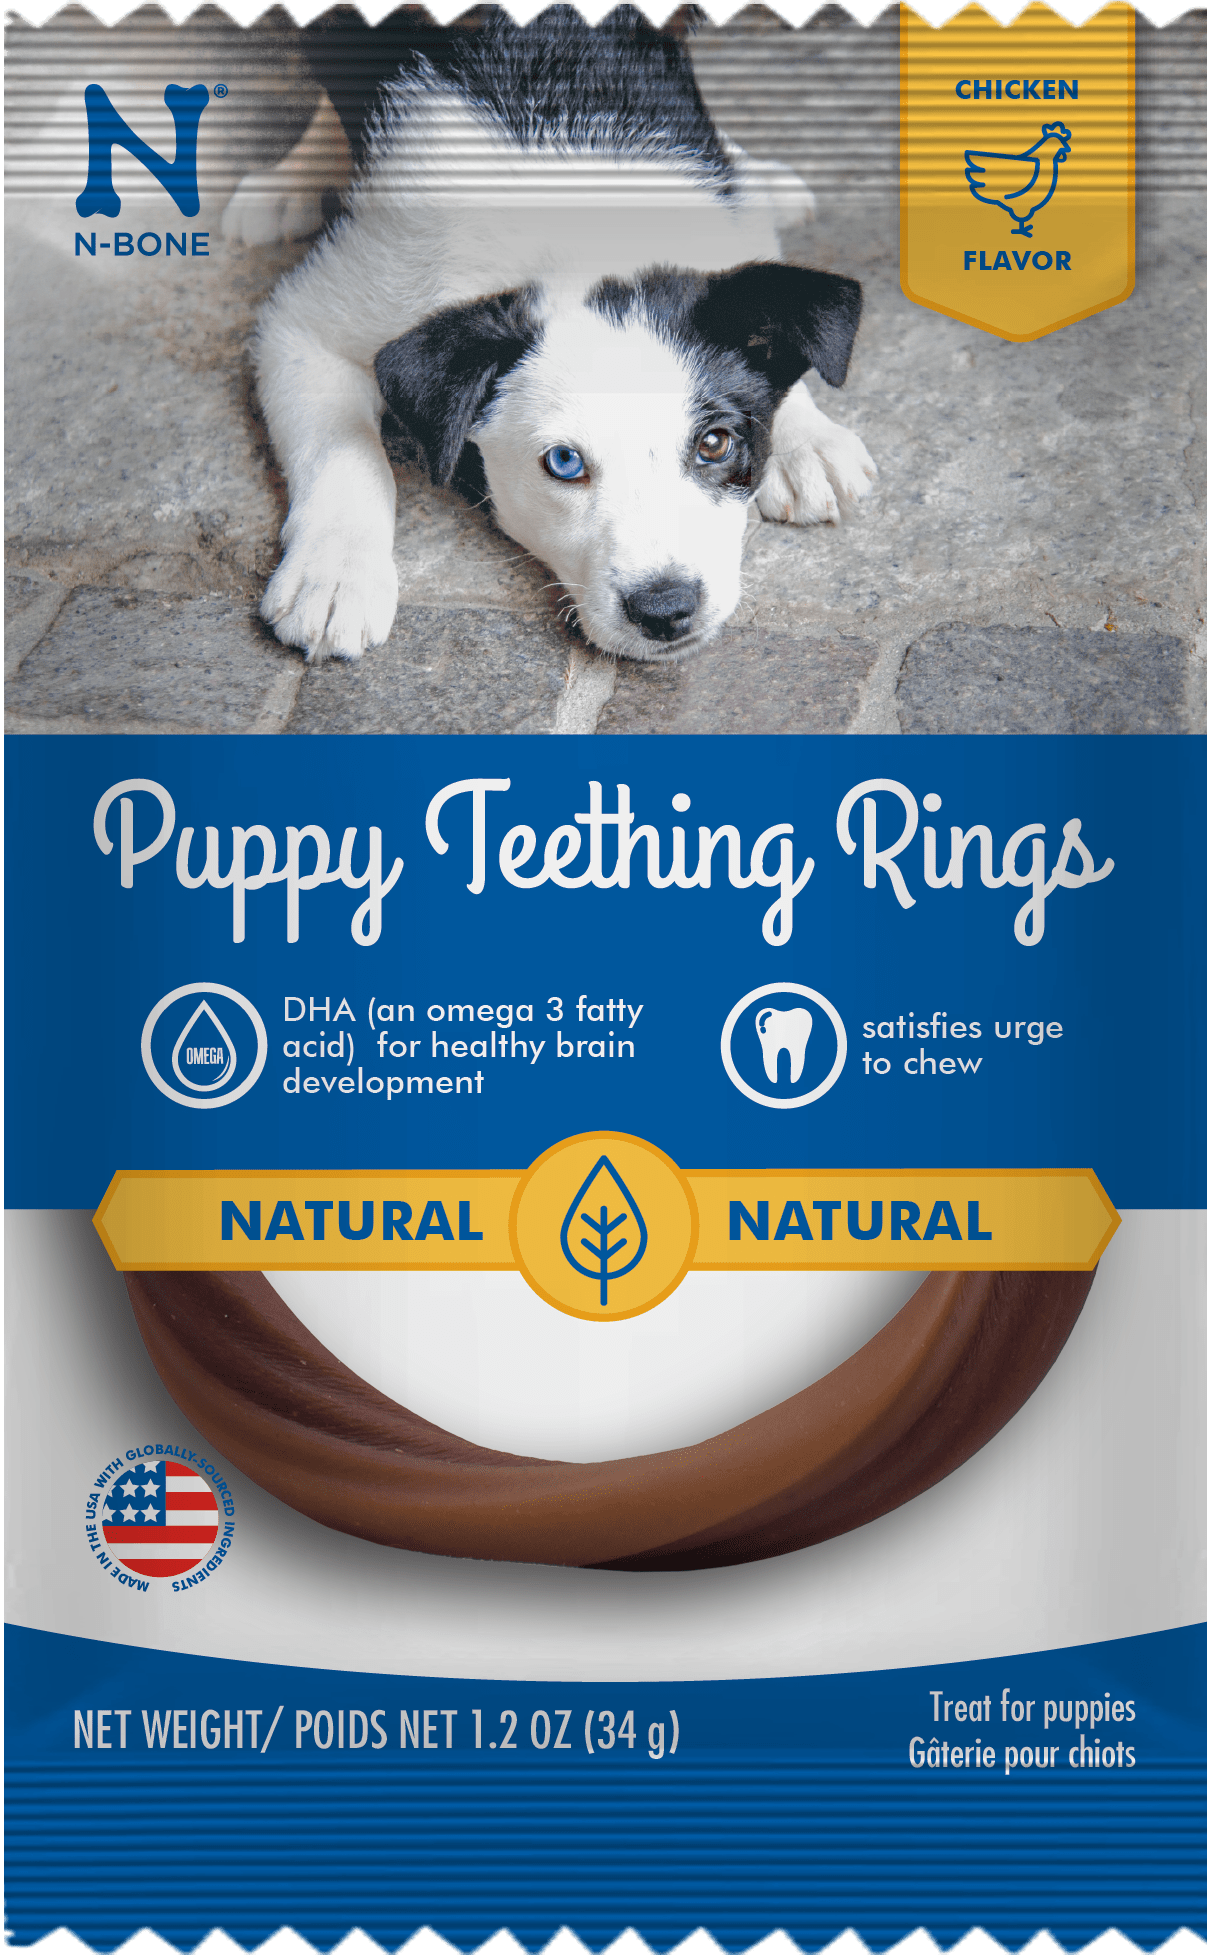 N-Bone® Puppy Teething Rings Chicken Flavor